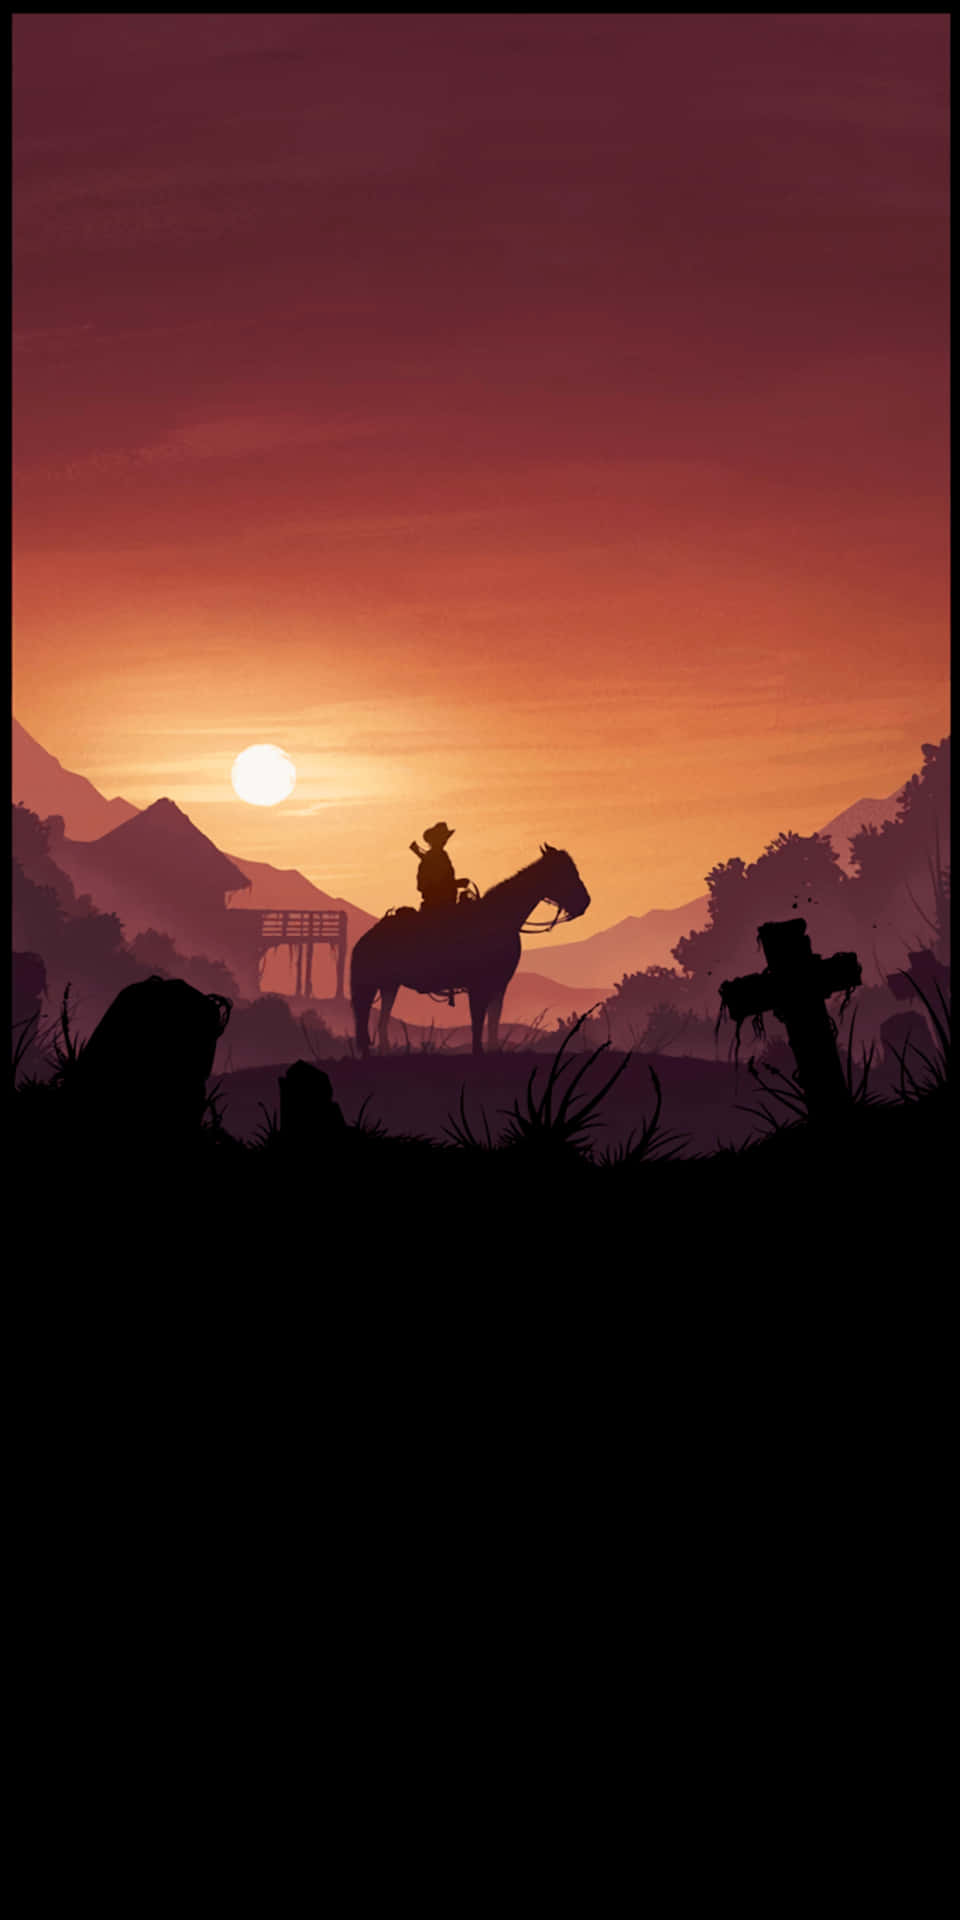 Pixel3 Red Dead Redemption 2 Bakgrundsbild Med En Cowboy Som Rider På En Häst.